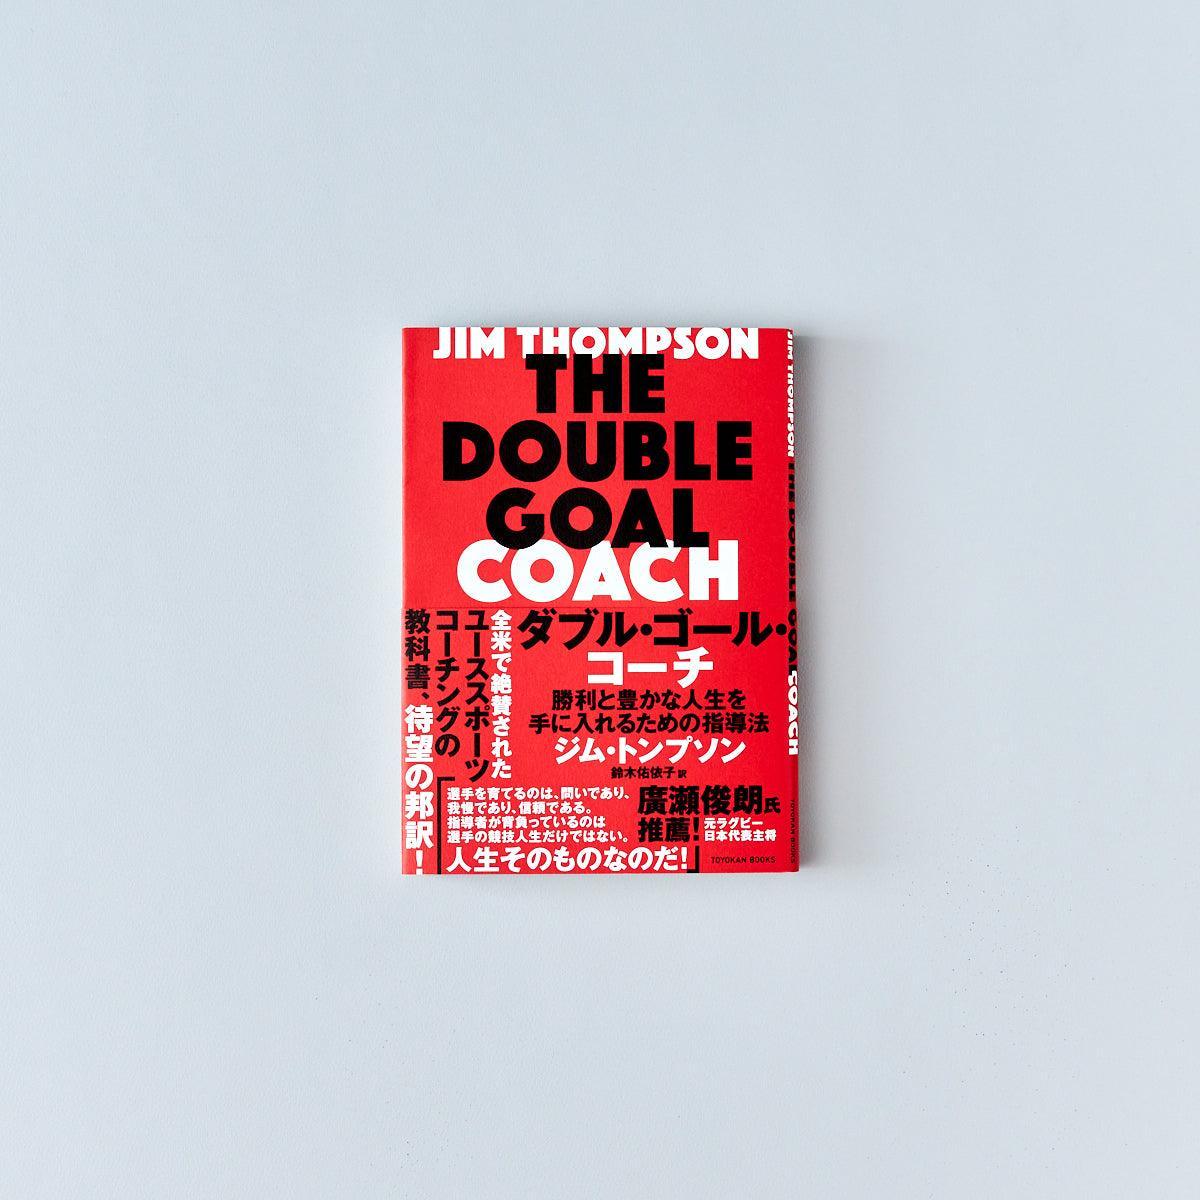 ダブル・ゴール・コーチ -勝利と豊かな人生を手に入れるための指導法- - 東洋館出版社